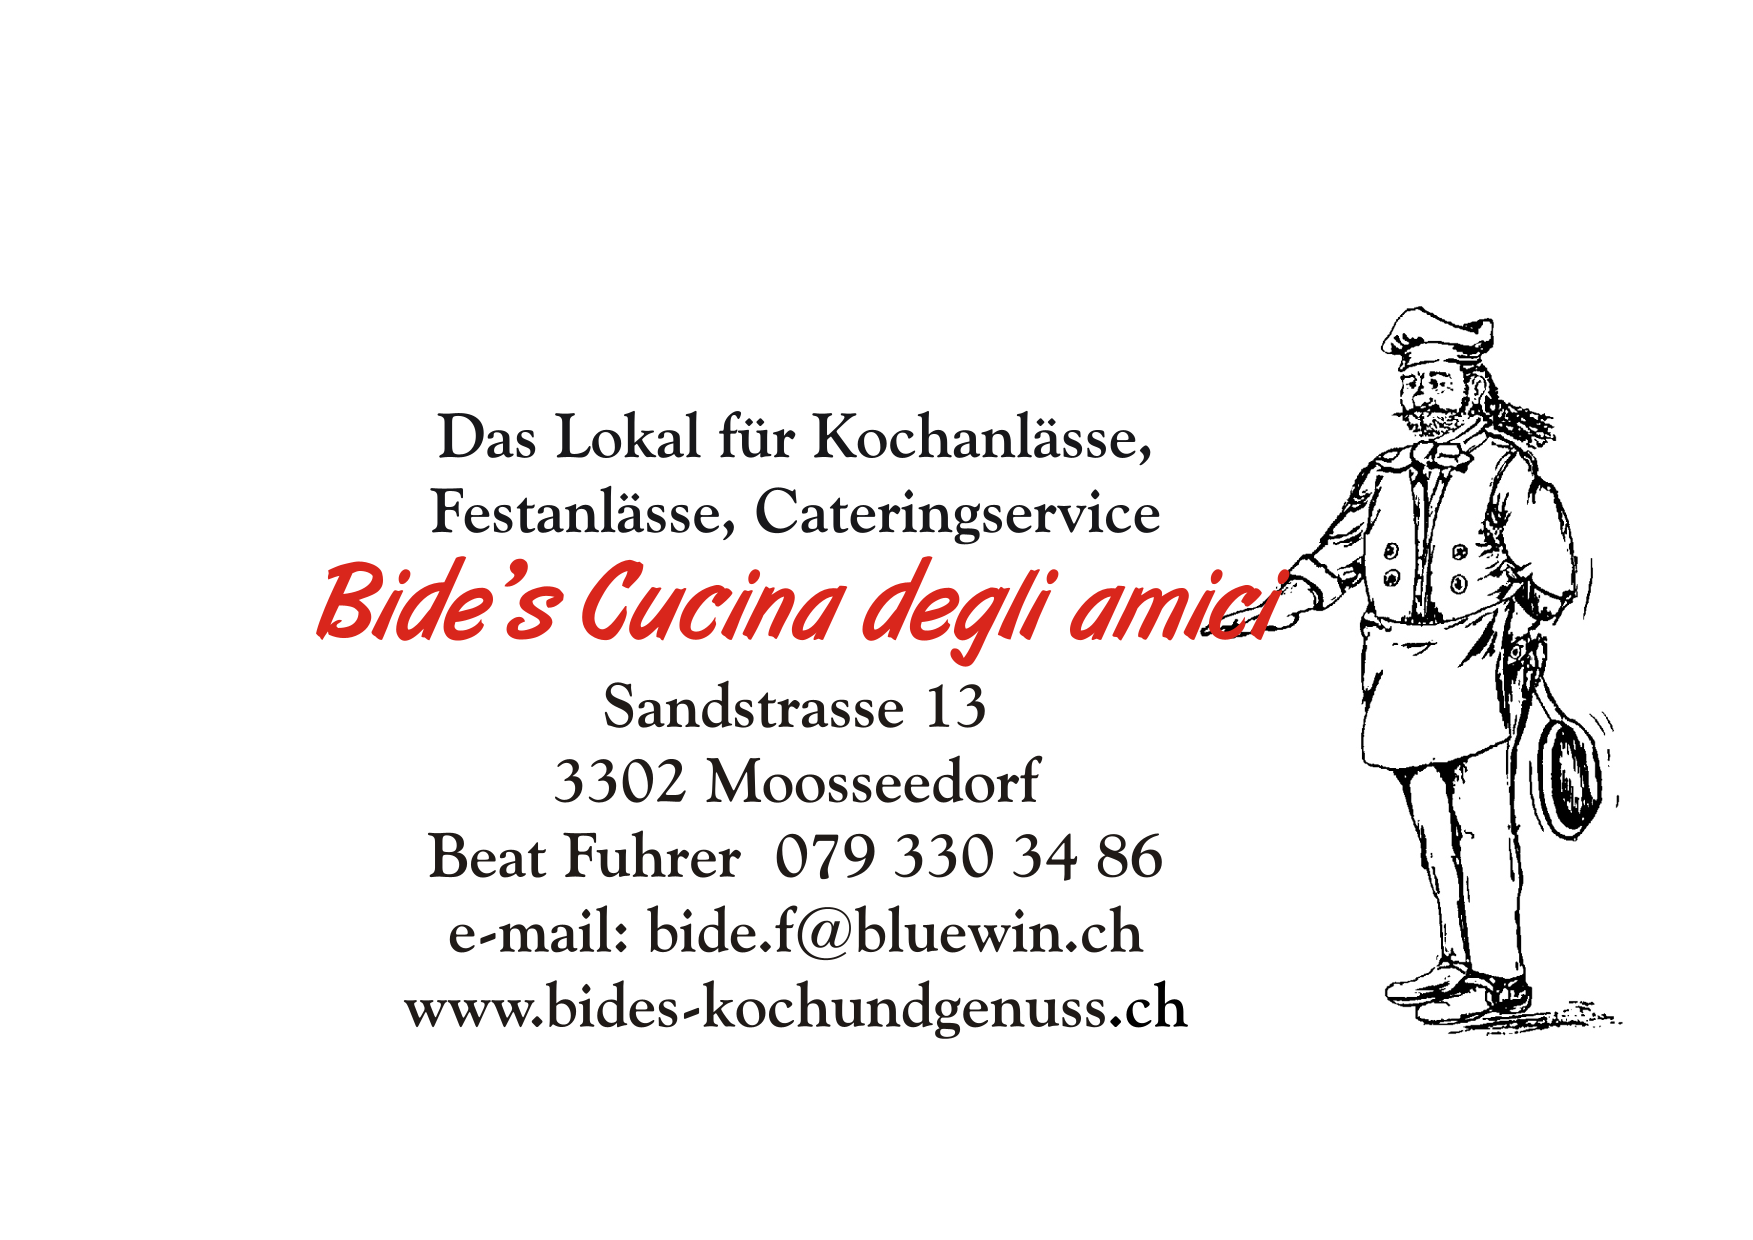 (c) Bides-kochundgenuss.ch